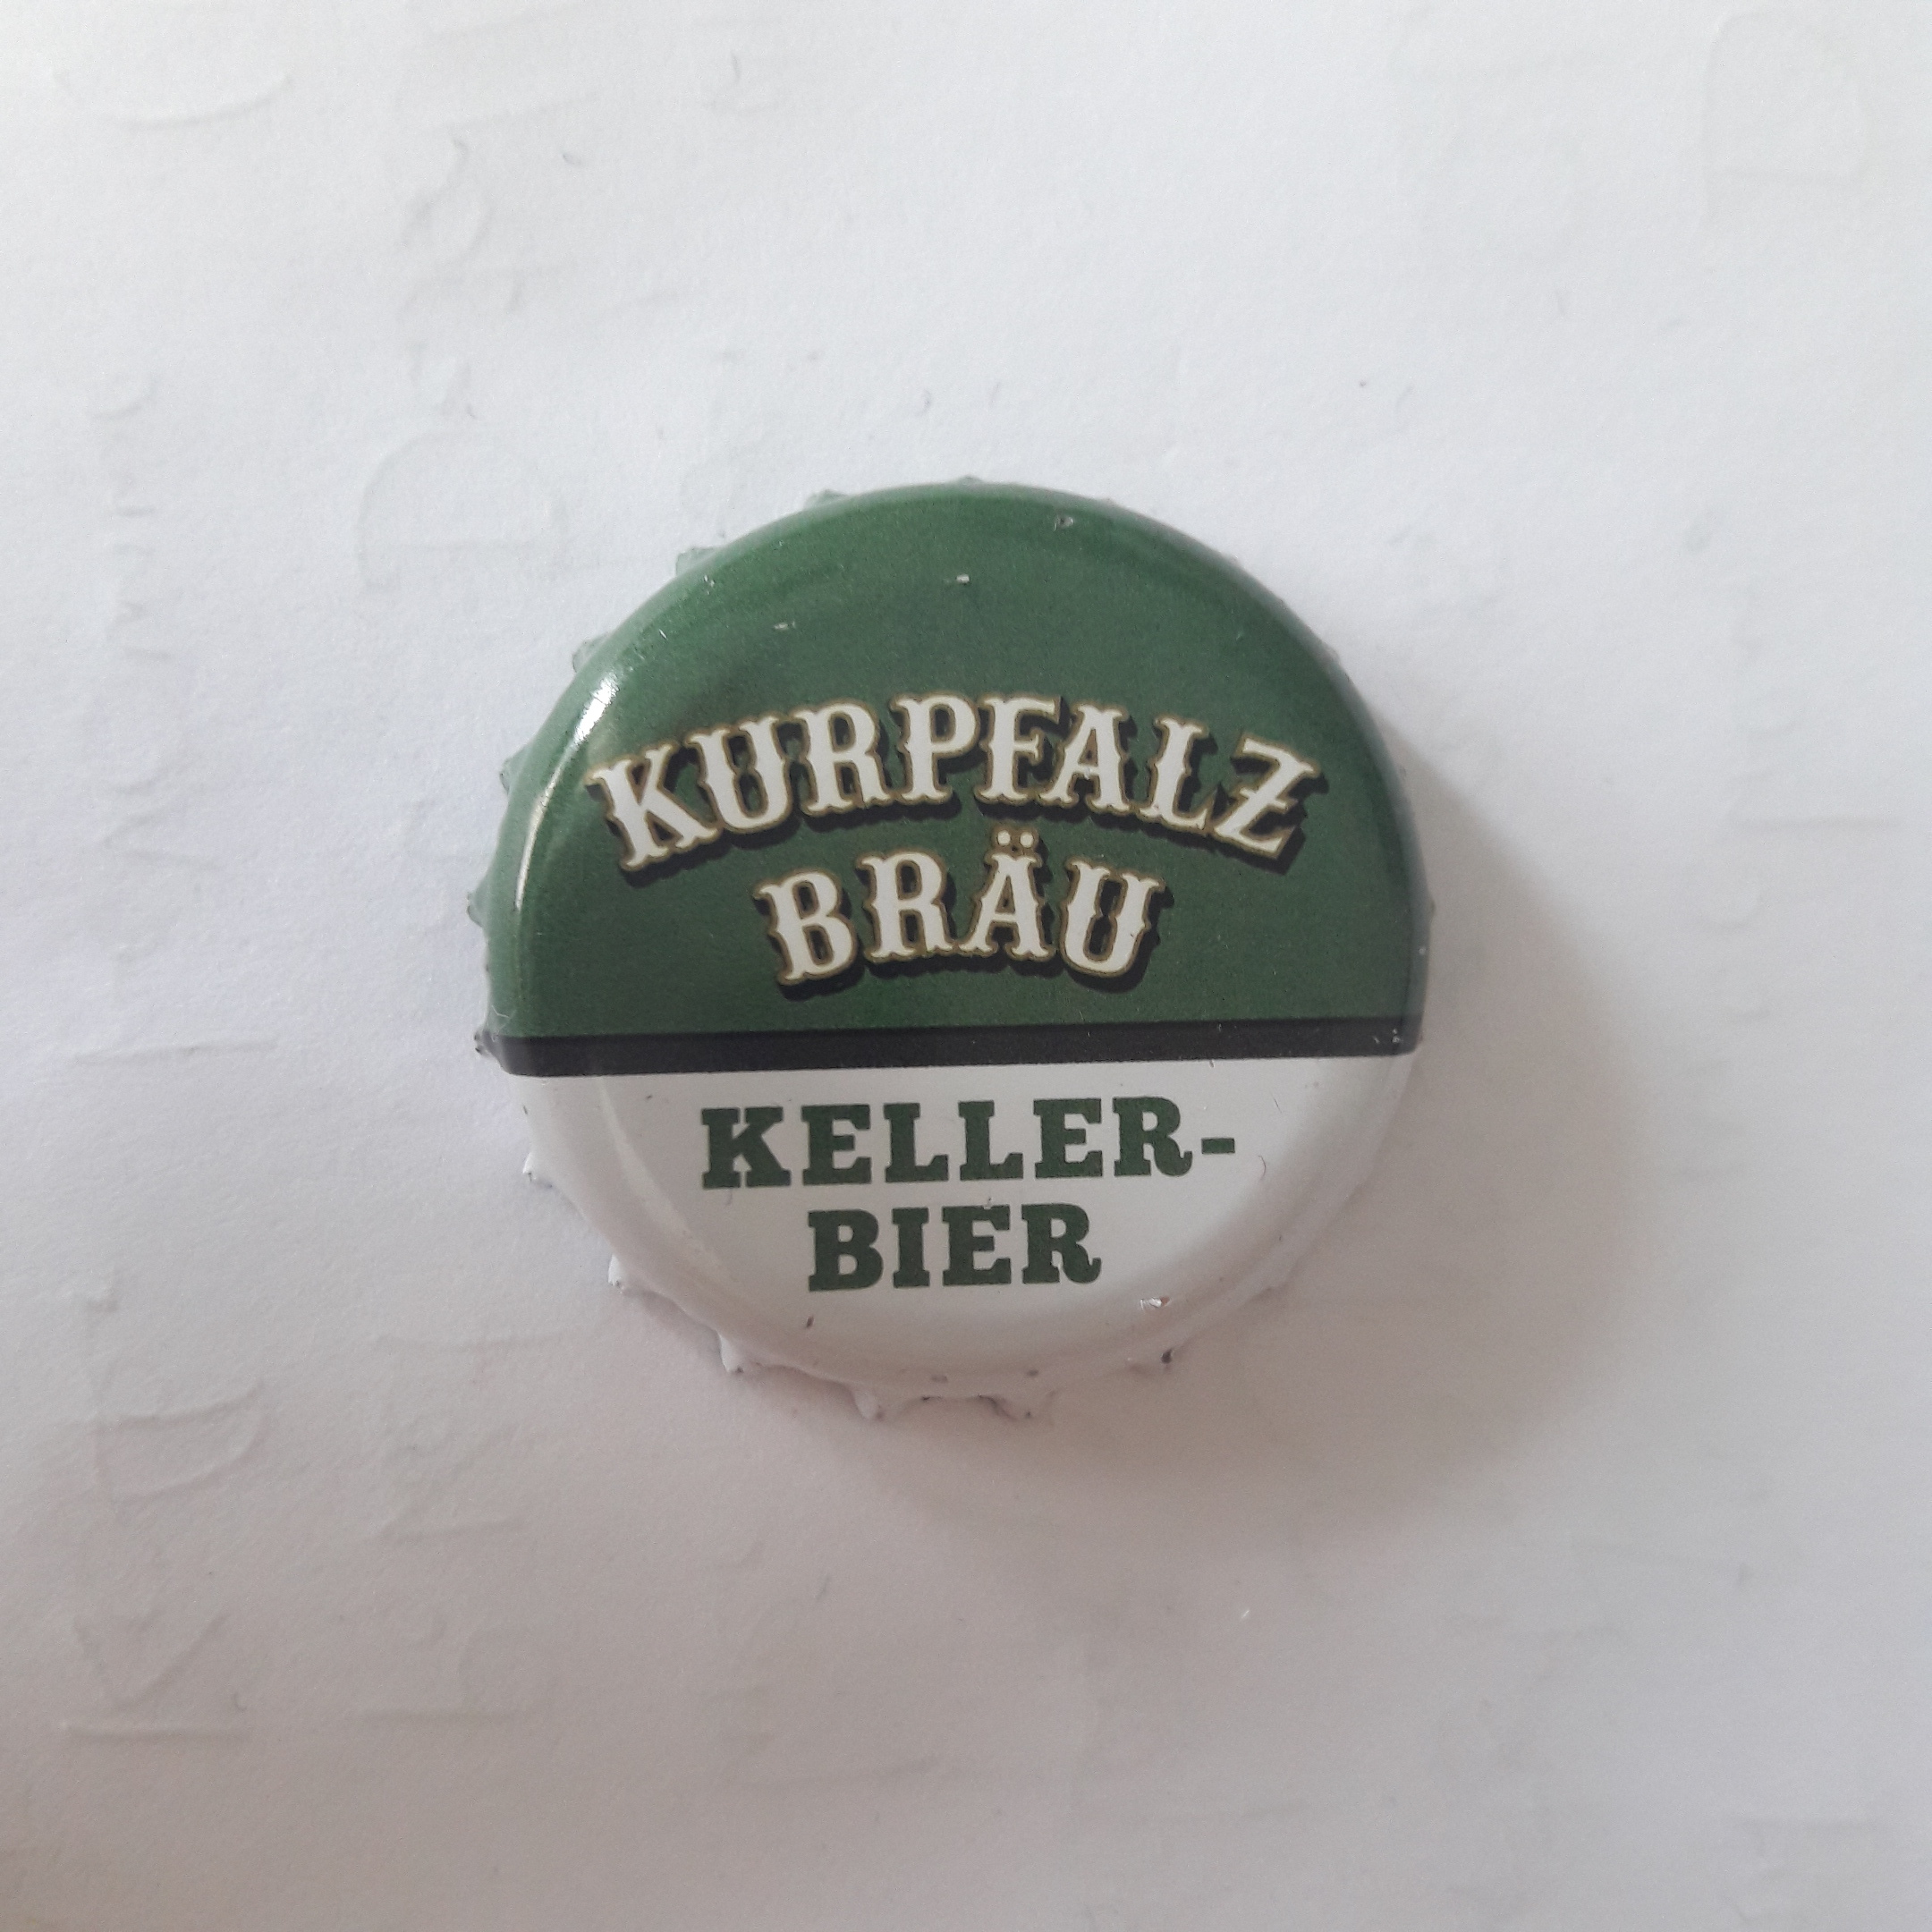 Kurpfalz Bräu Kellerbier